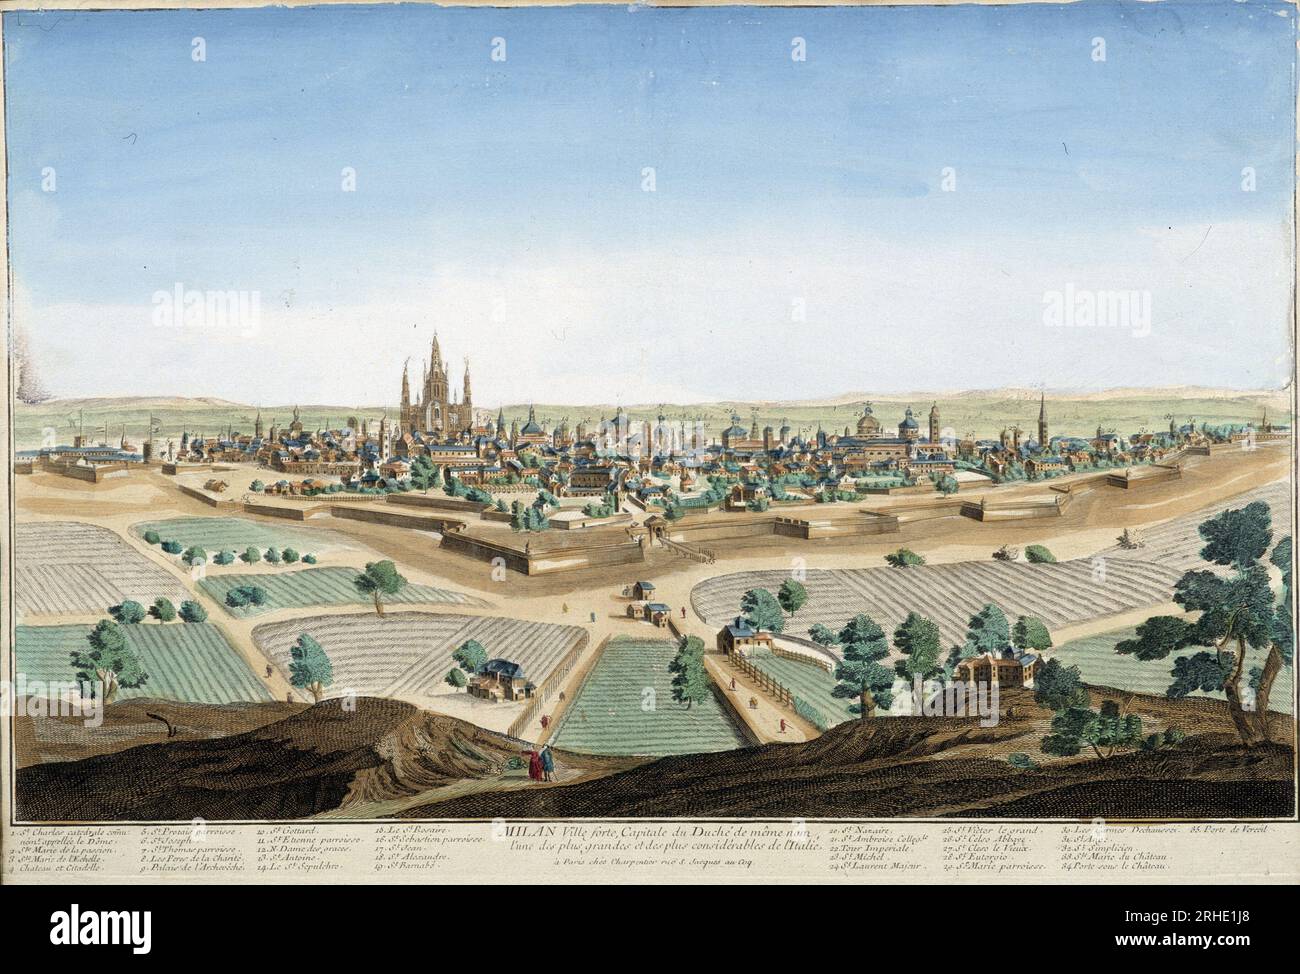 Vue de la ville de Milan, Italie avec la Cathedral et les Festung. Gravure du 18eme Siecle. Stockfoto